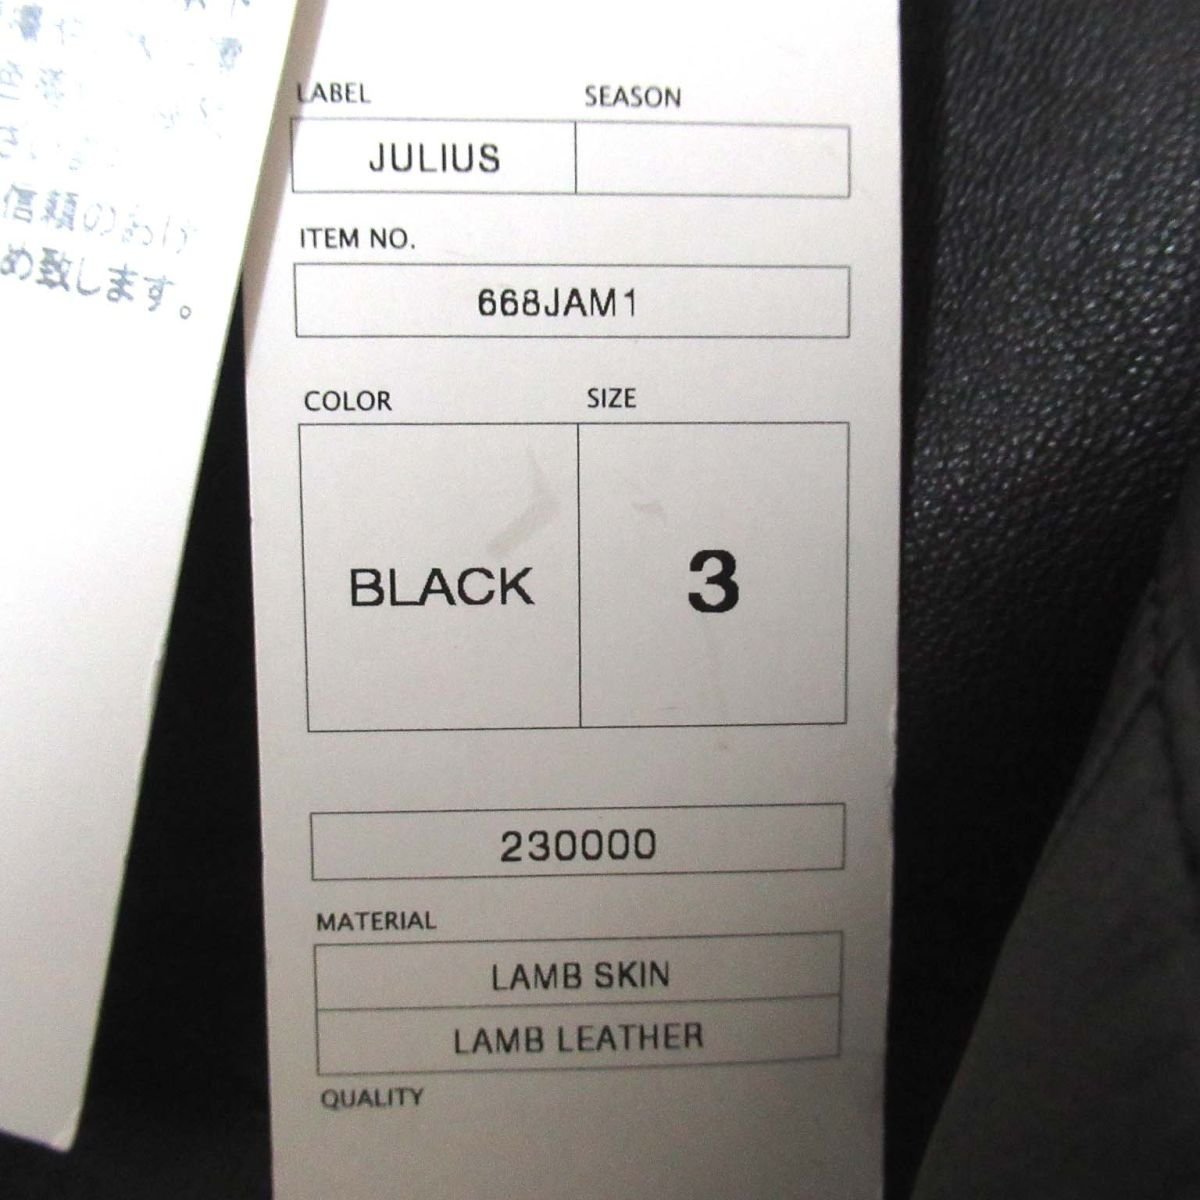 新品 タグ付き JULIUS ユリウス 伊勢丹限定 ラムレザー コート 668JAM1 サイズ3 黒 ブラック C0405の画像7